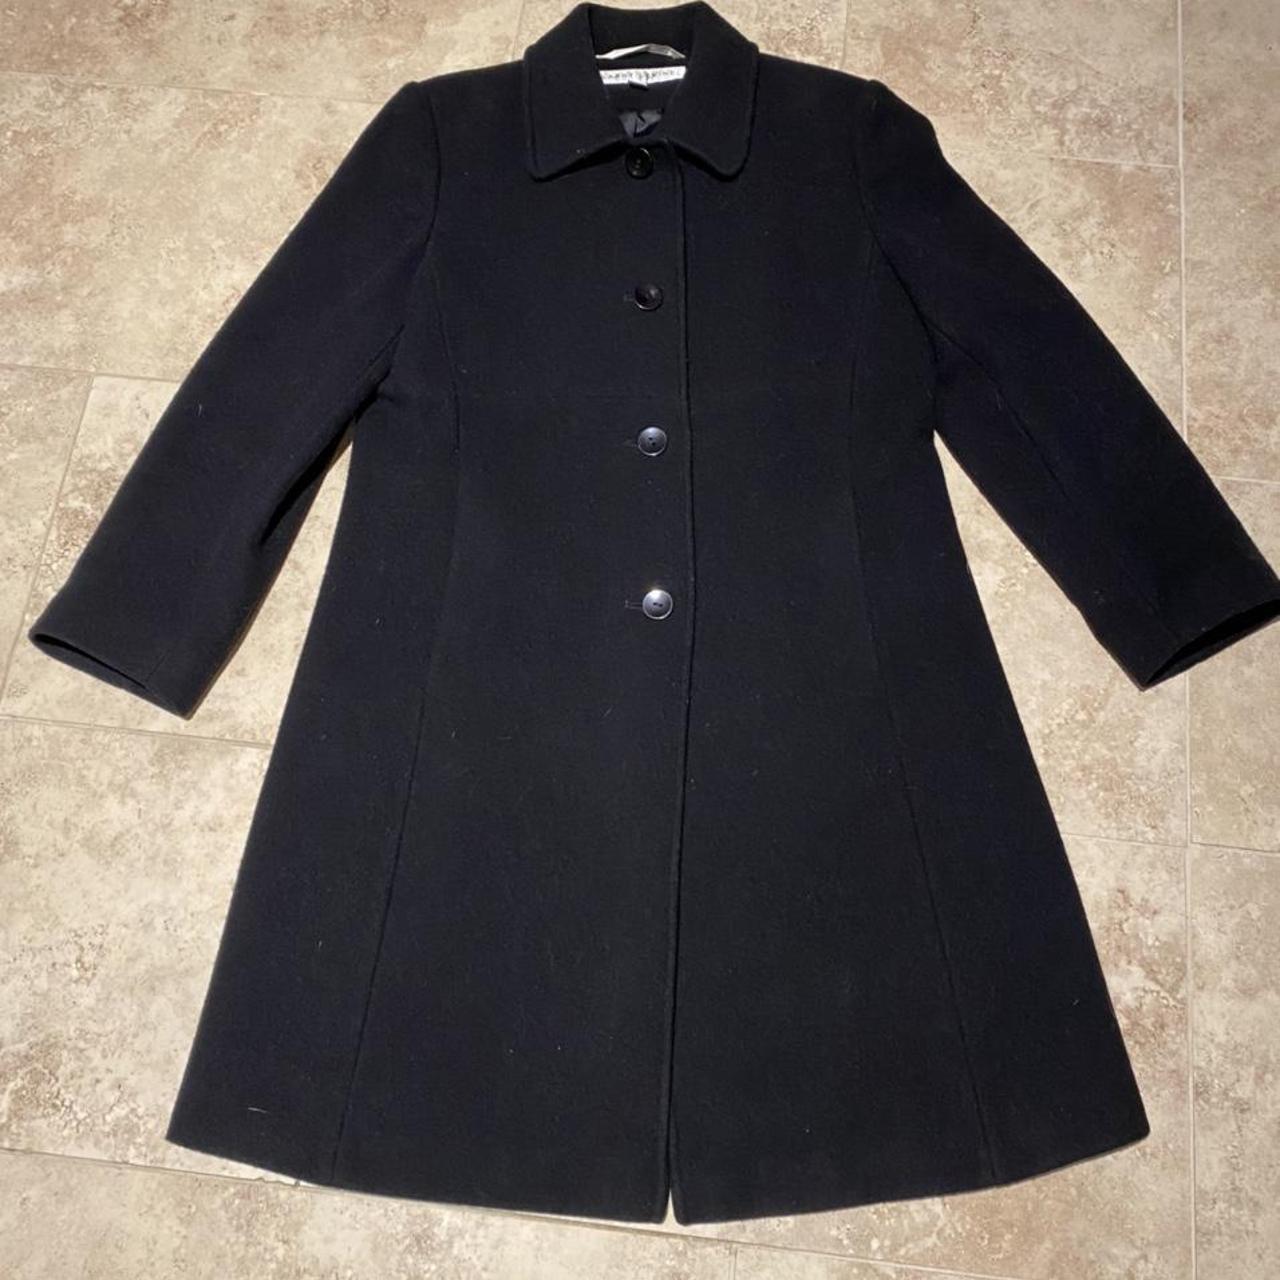 dark academia black 100% wool coat. excellent... - Depop